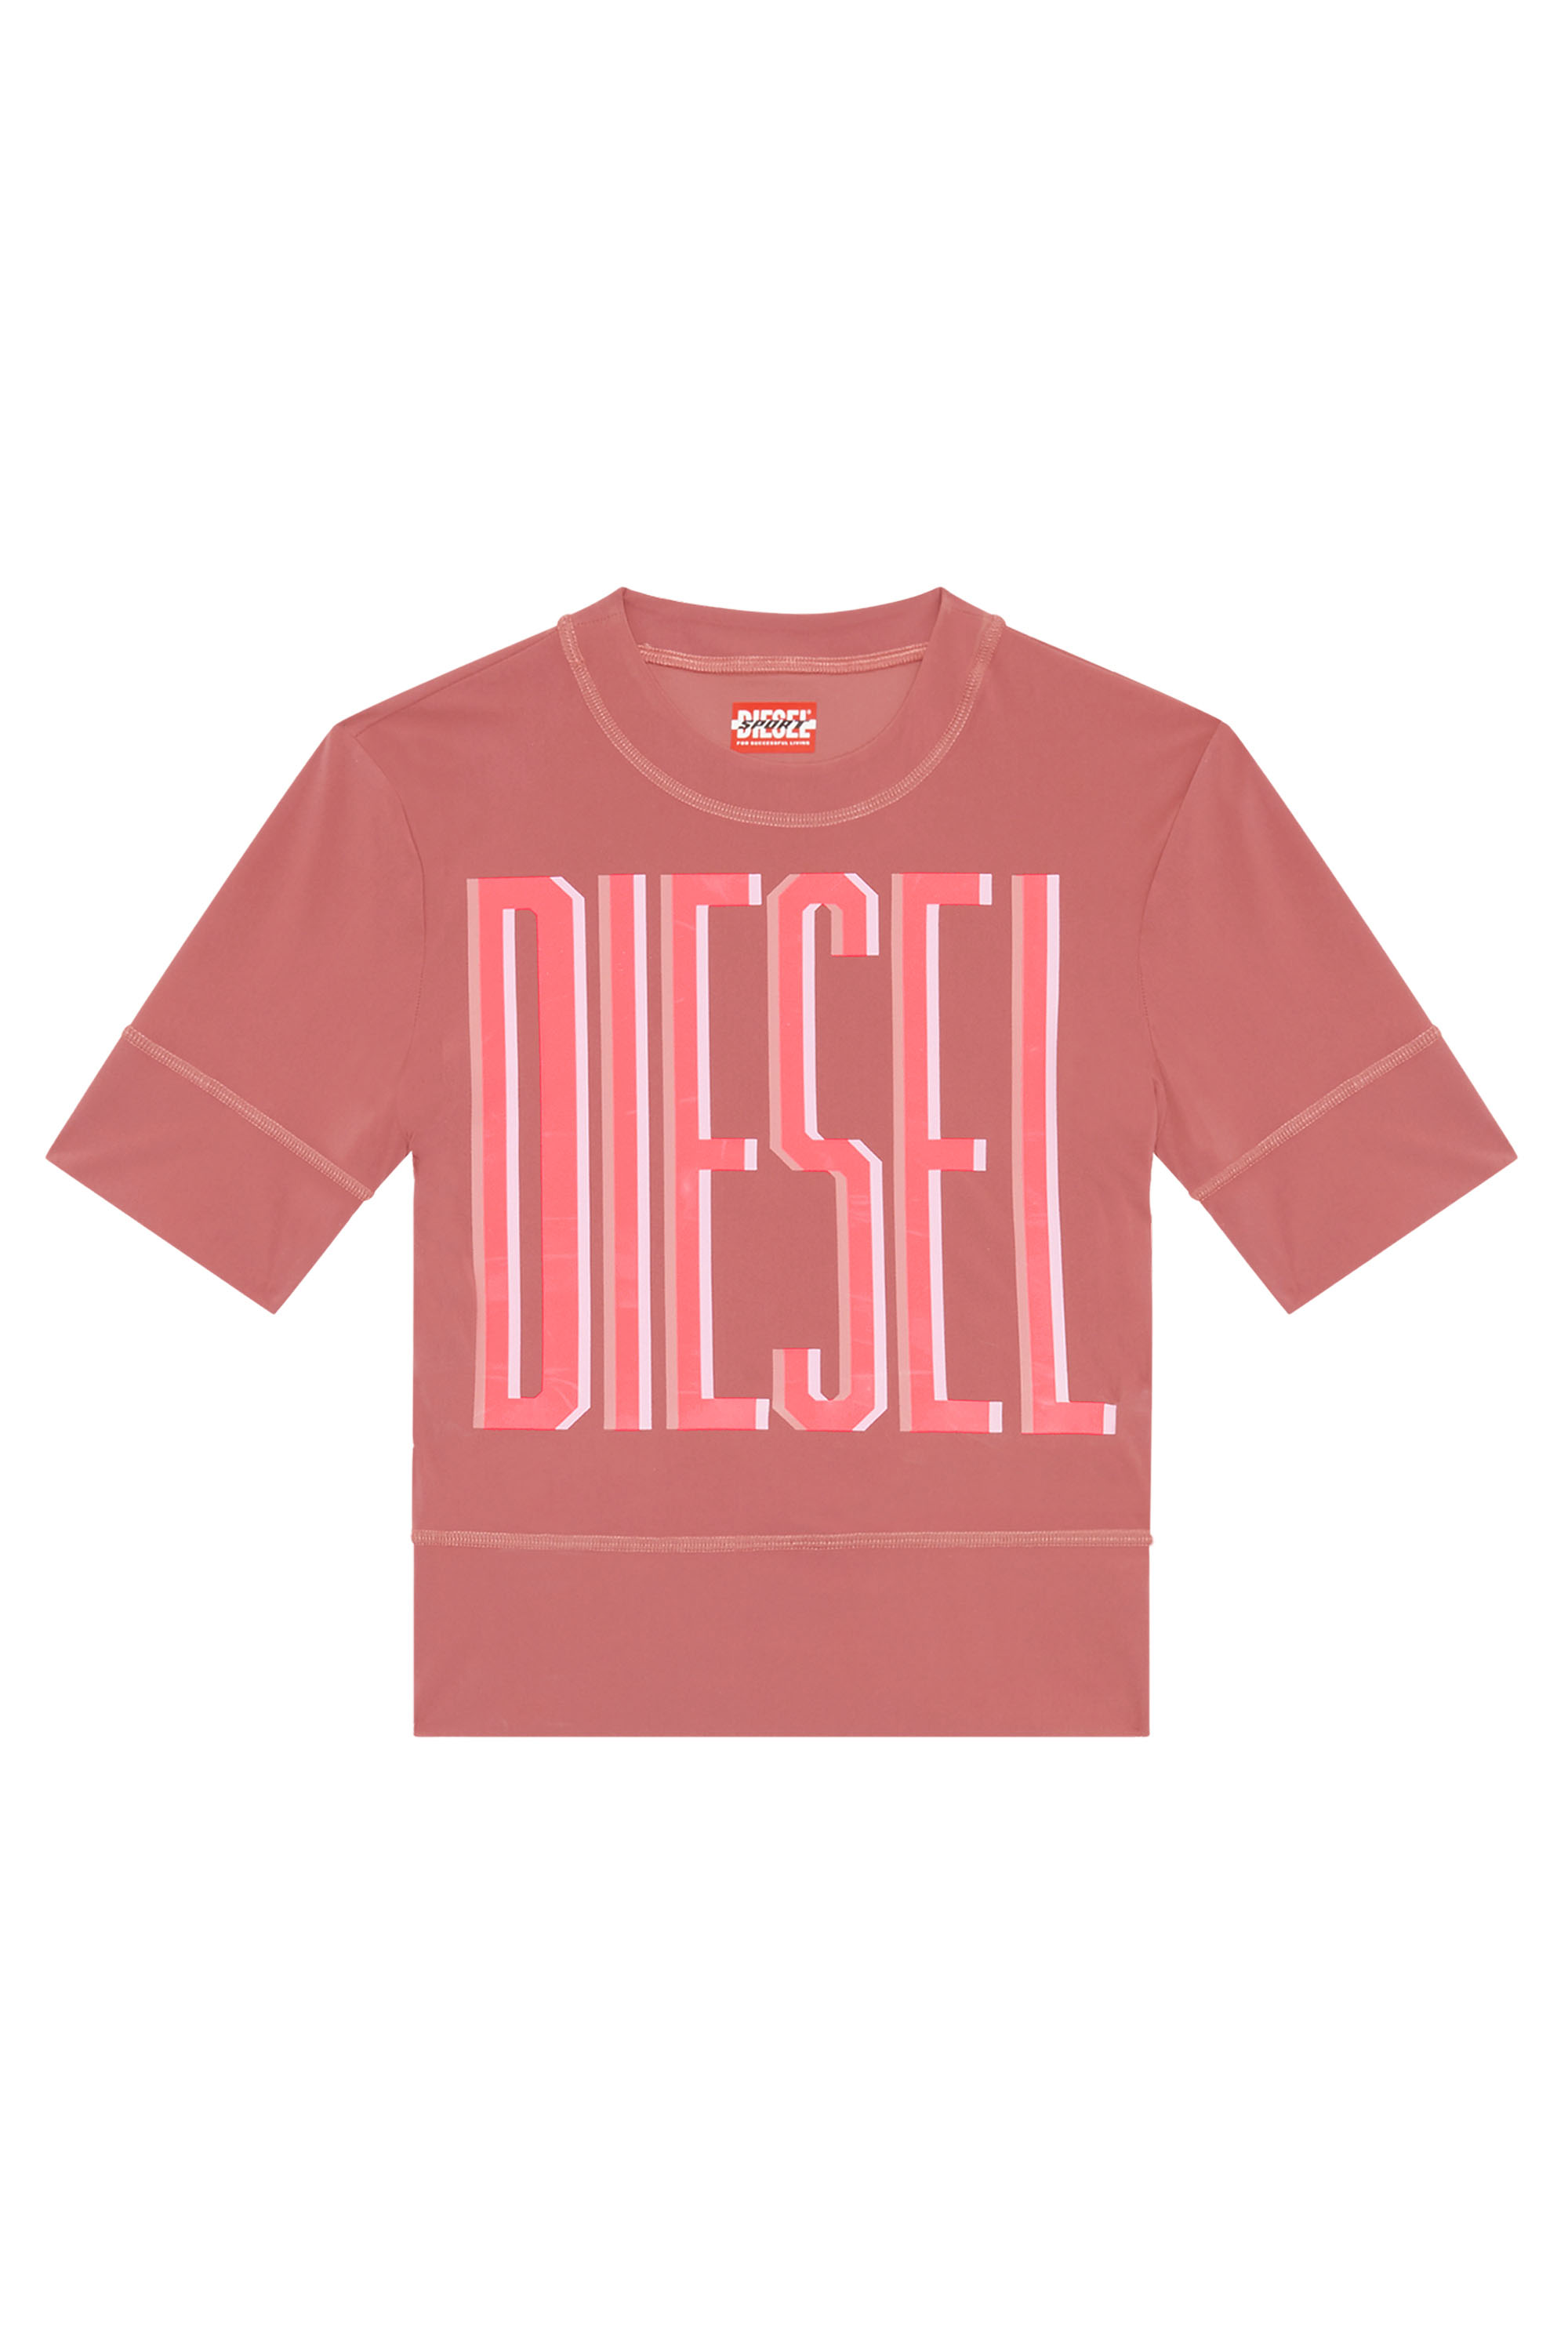 Diesel - AWTEE-JULES-WT06, Red - Image 1